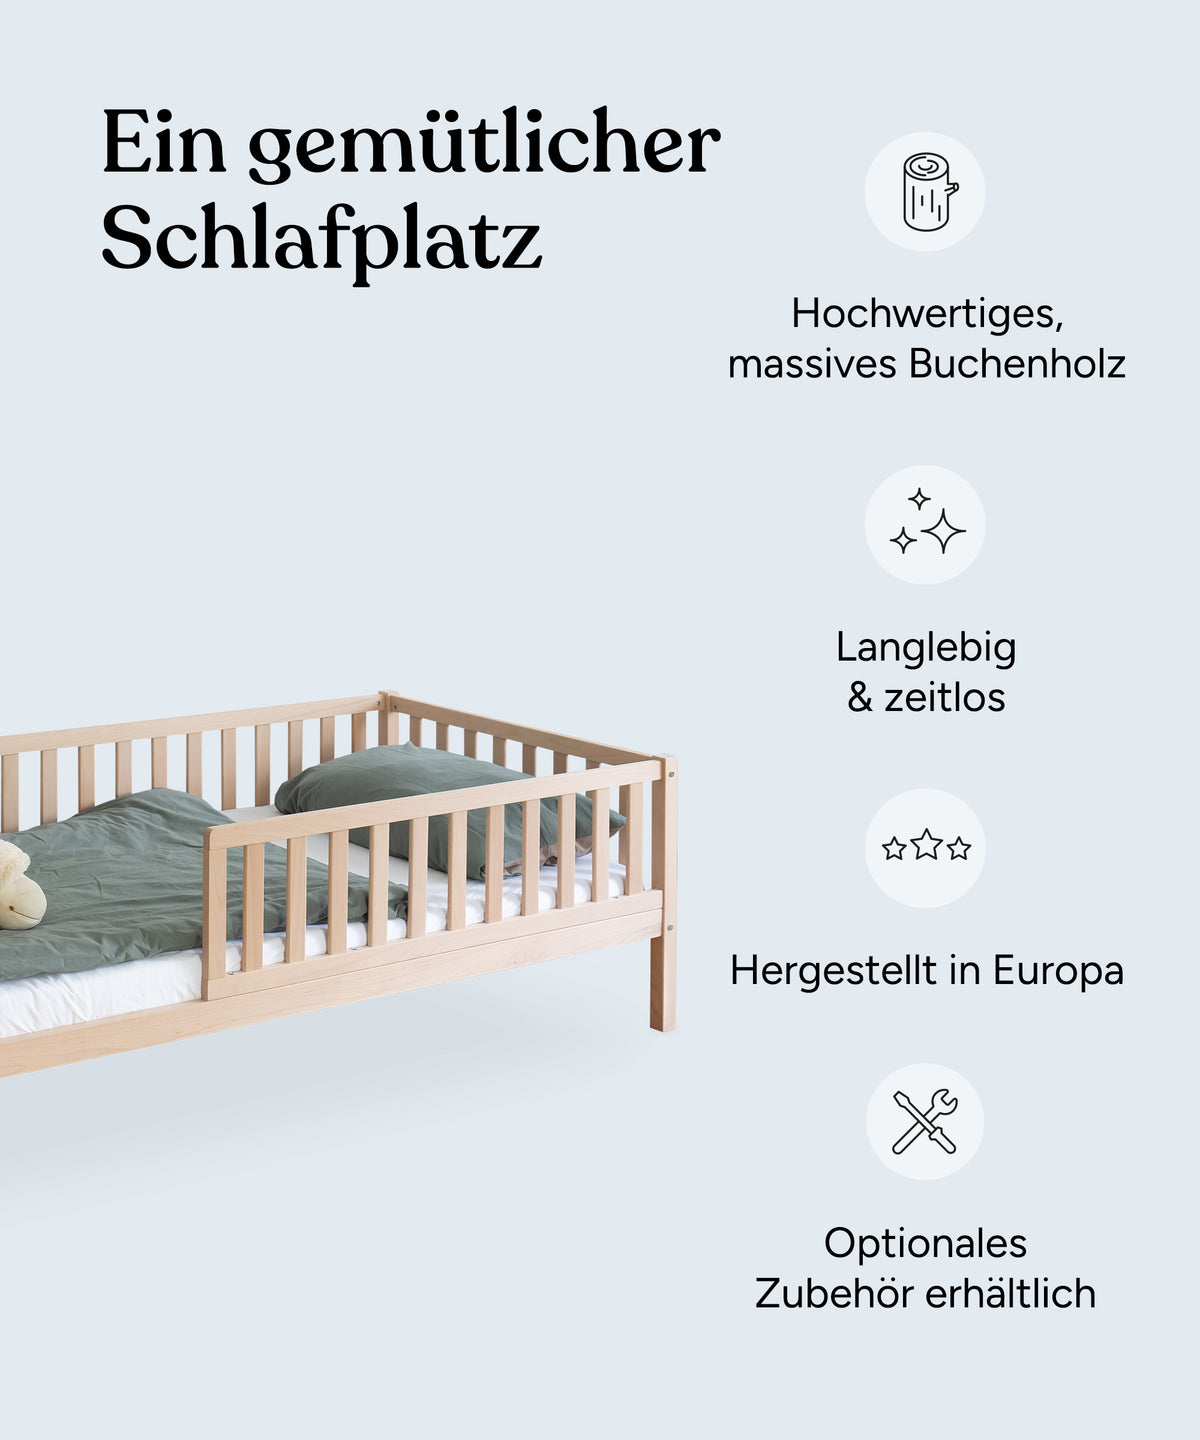 Vorteile vom Kinderbett Buche natur: Hochwertiges, massives Buchenholz, langlebig und zeitlos, hergestellt in Europa und optionales Zubehör erhältlich.